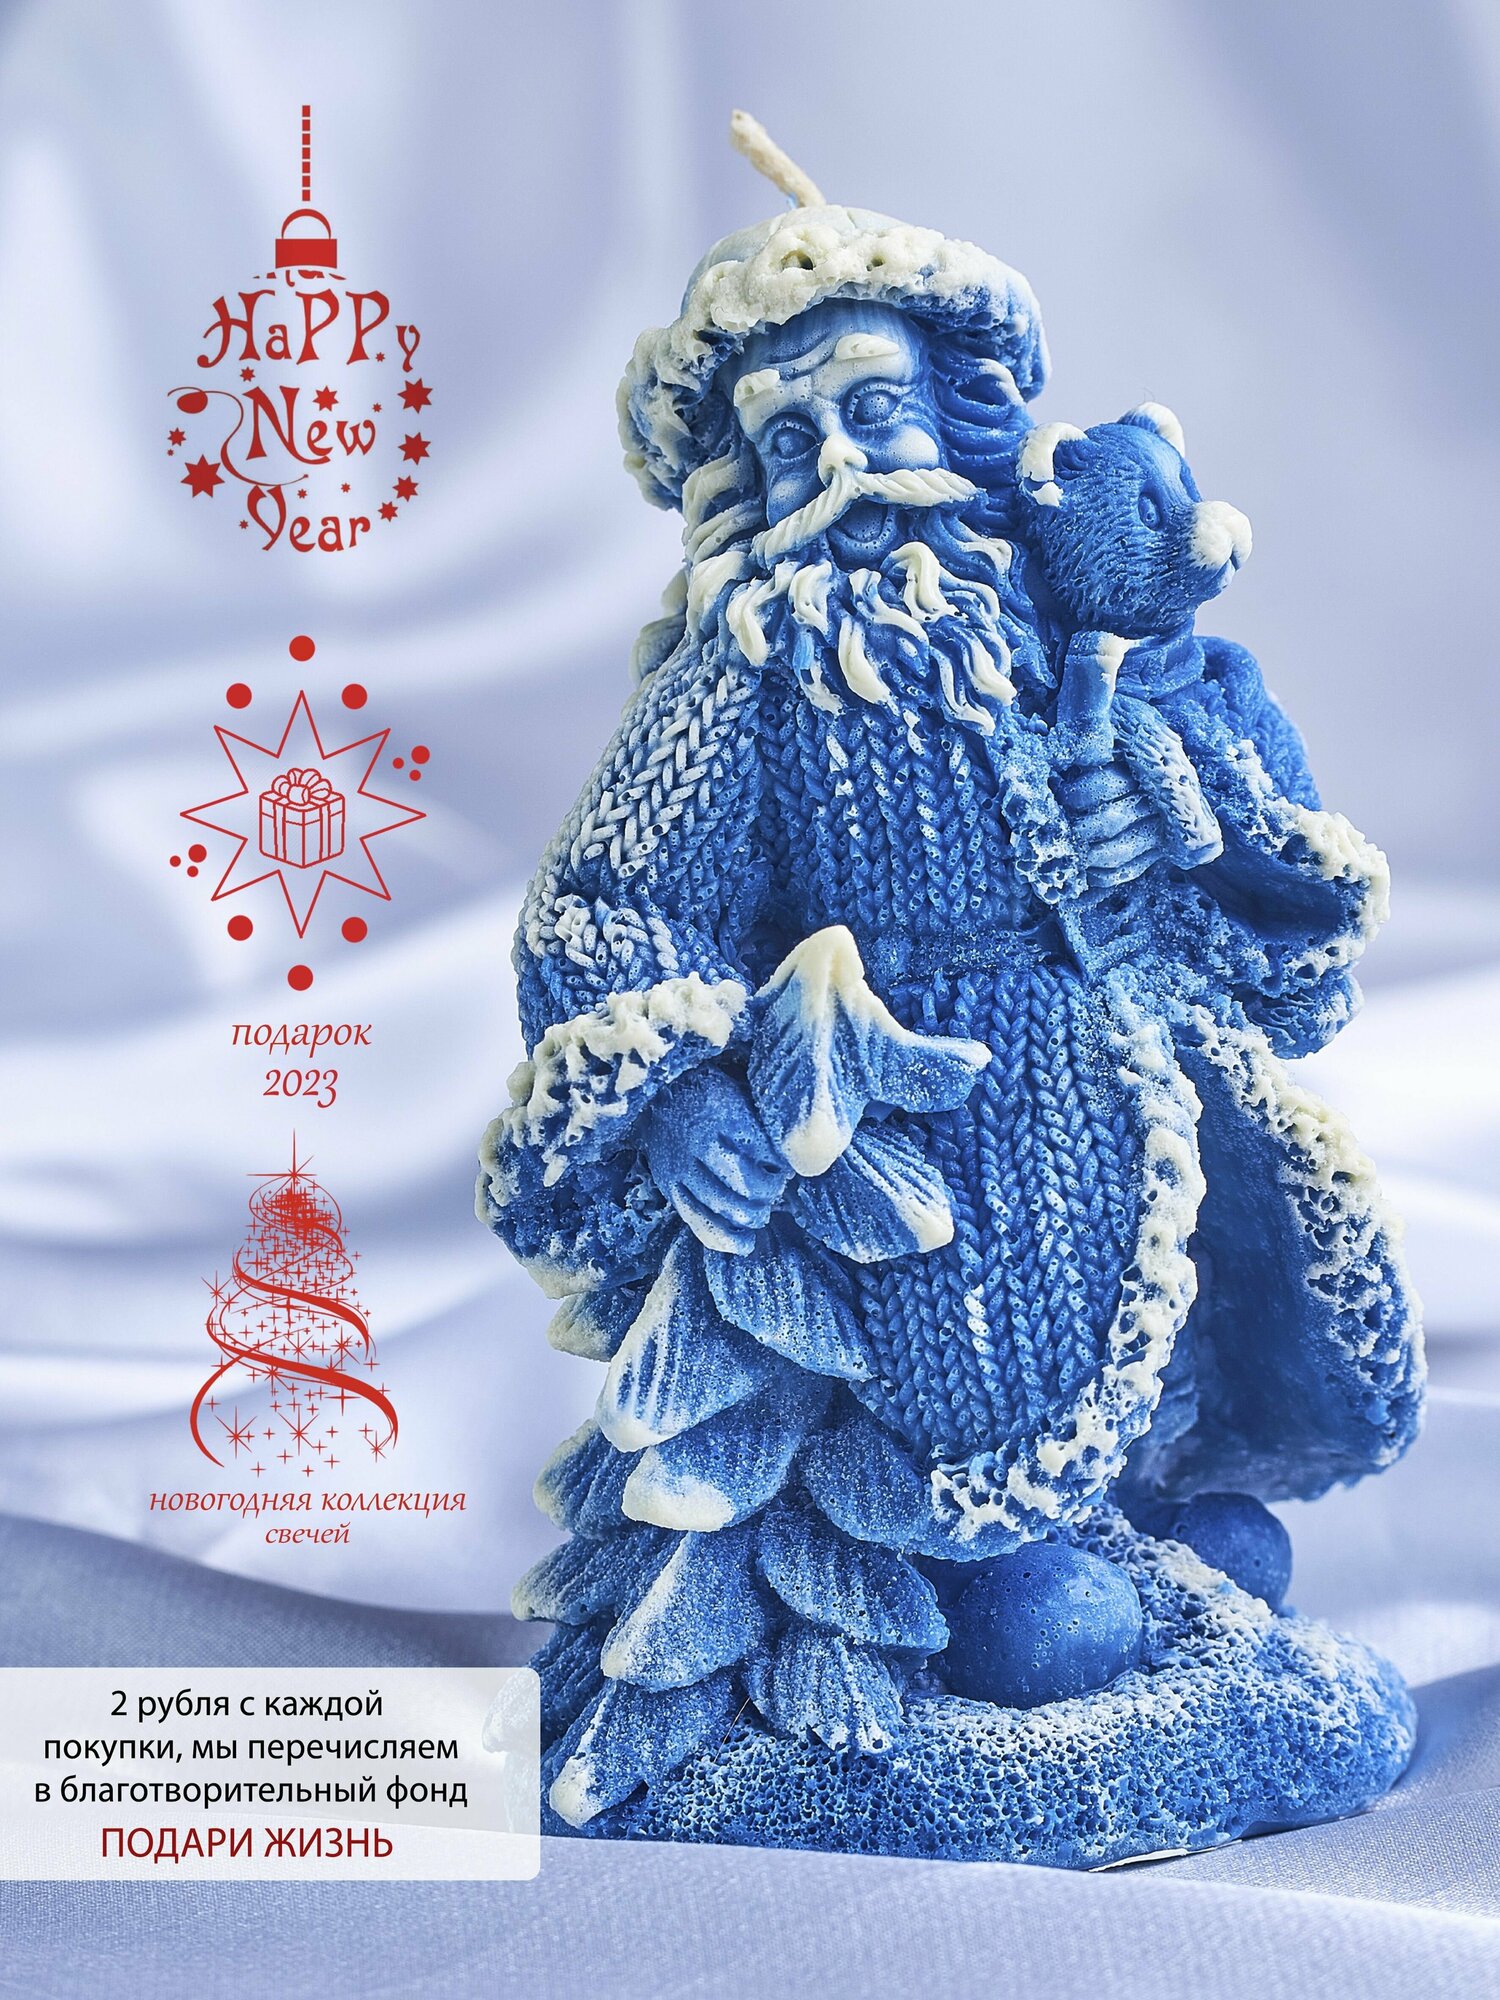 Свеча восковая , интерьерная, декоративная, подарочная, фигурная, натуральная, для подарка , новогодние свечи "Дед Мороз" синий